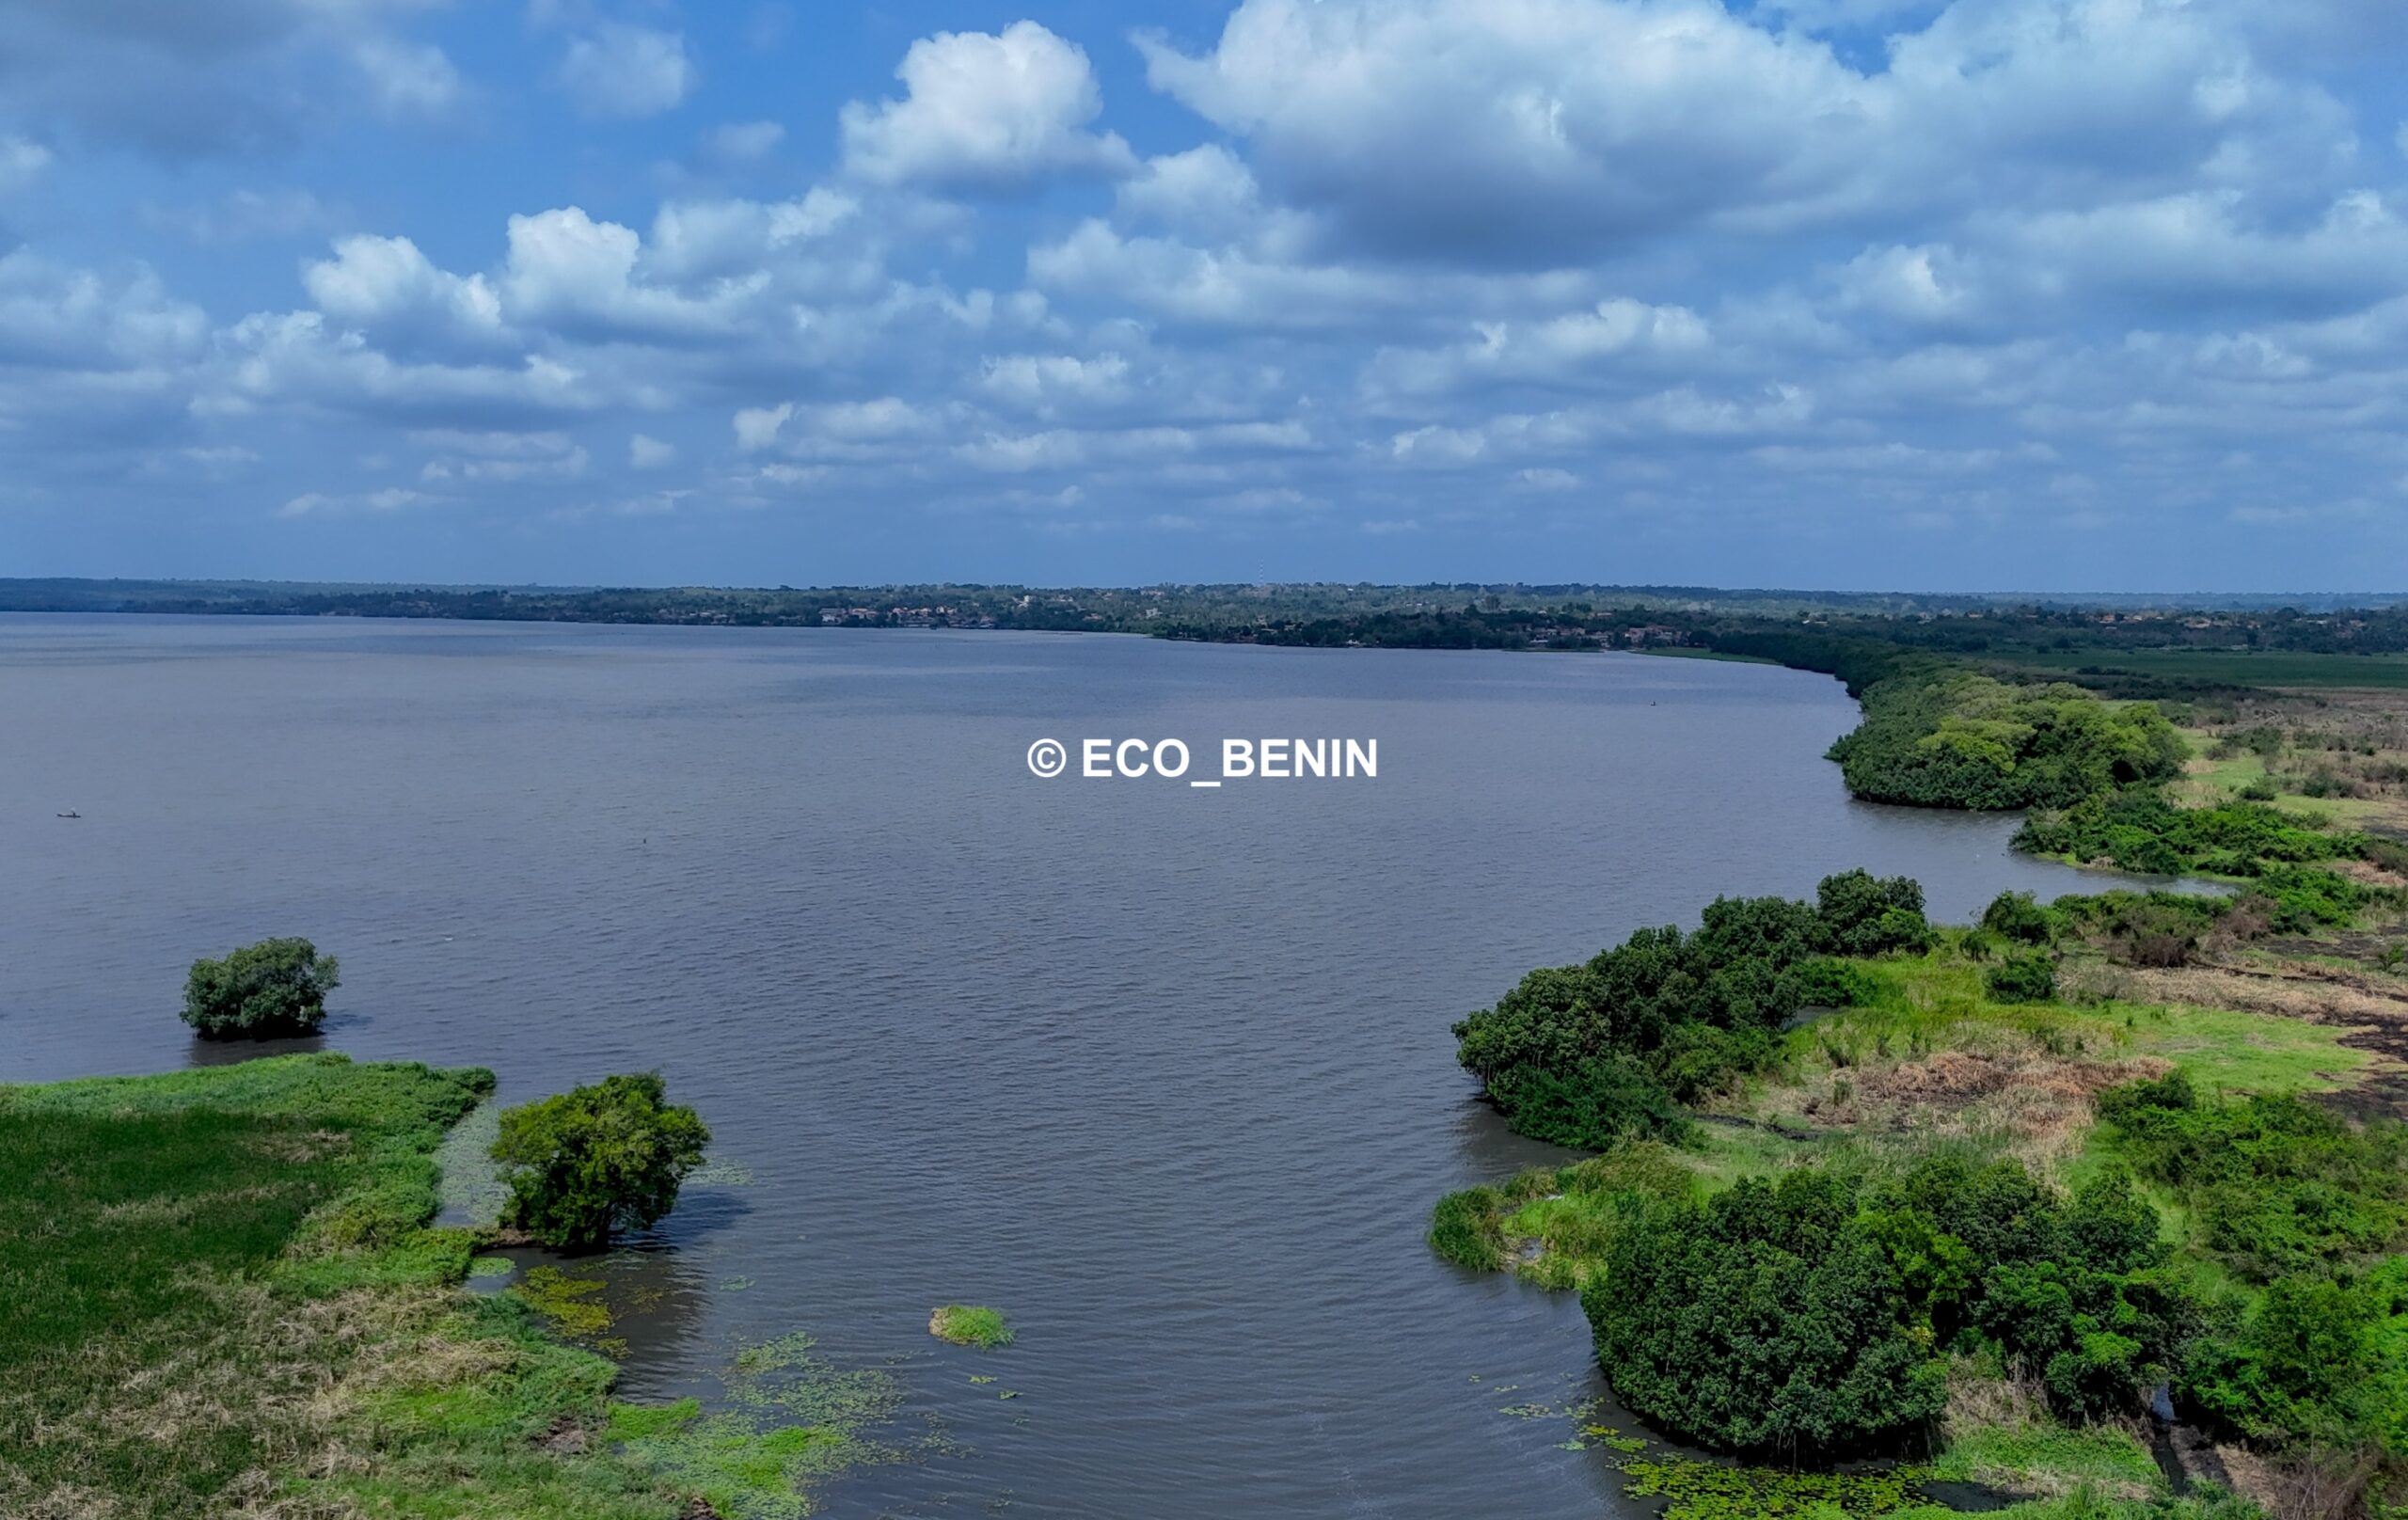 Lire la suite à propos de l’article Les initiatives de restauration des écosystèmes : une voie vers un développement durable au Bénin